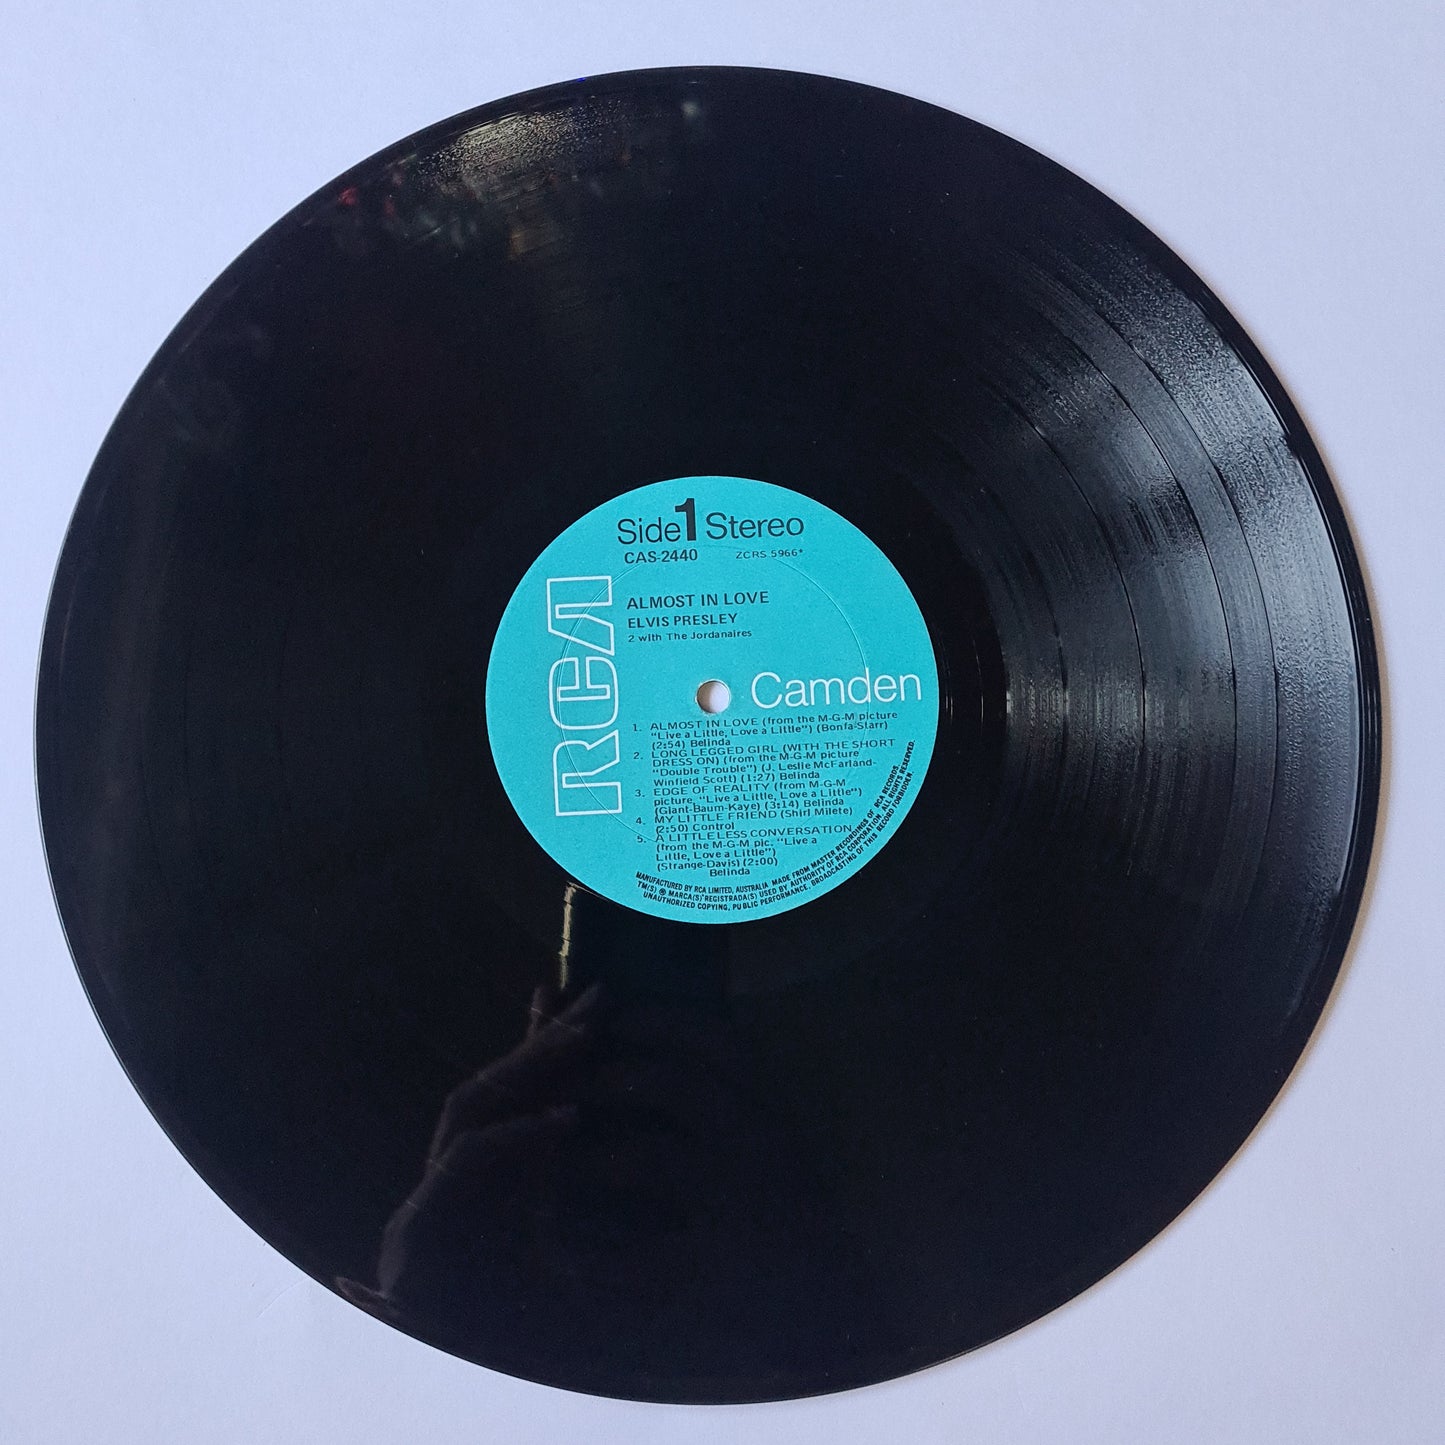 Elvis Presley – Almost In Love - 1970 - Vinyl Record